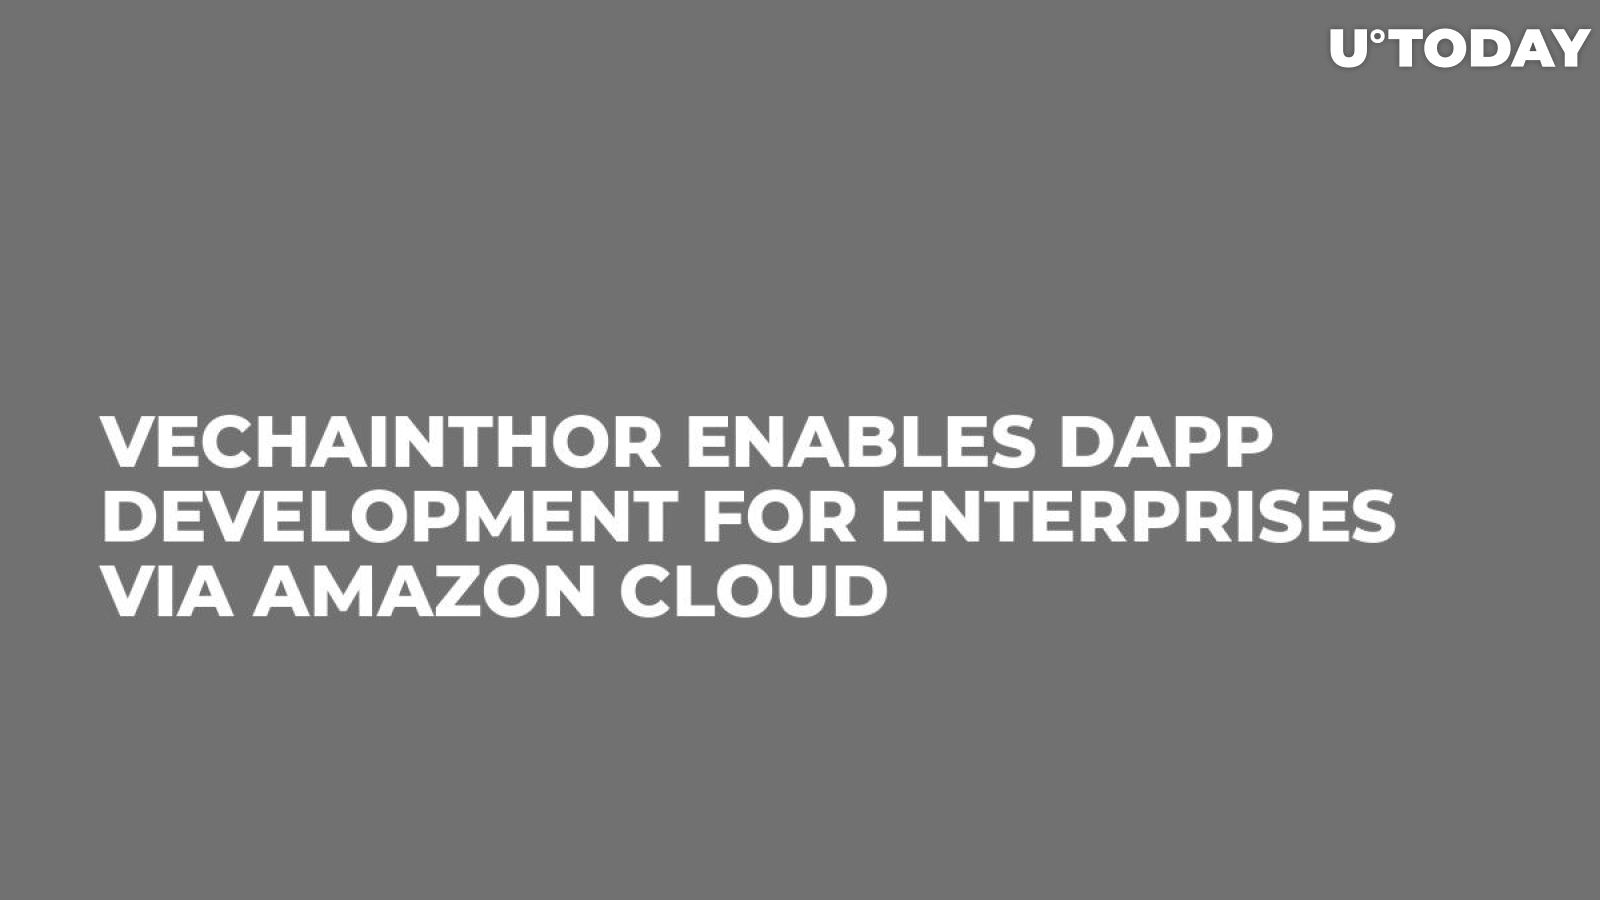 VeChainThor Enables DApp Development for Enterprises via Amazon Cloud